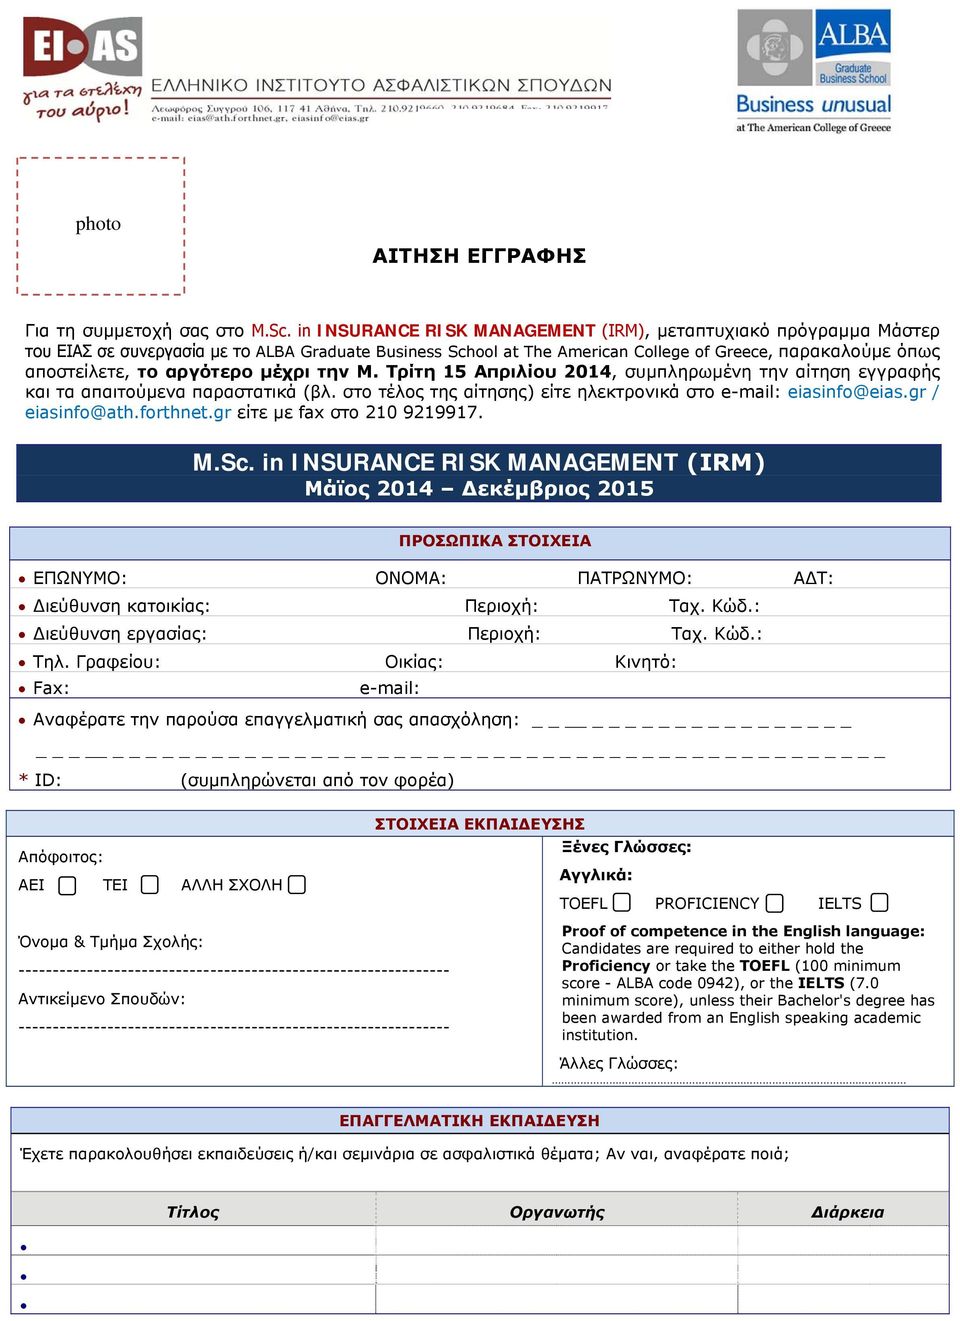 αργότερο μέχρι την Μ. Τρίτη 15 Απριλίου 2014, συμπληρωμένη την αίτηση εγγραφής και τα απαιτούμενα παραστατικά (βλ. στο τέλος της αίτησης) είτε ηλεκτρονικά στο e-mail: eiasinfo@eias.gr / eiasinfo@ath.